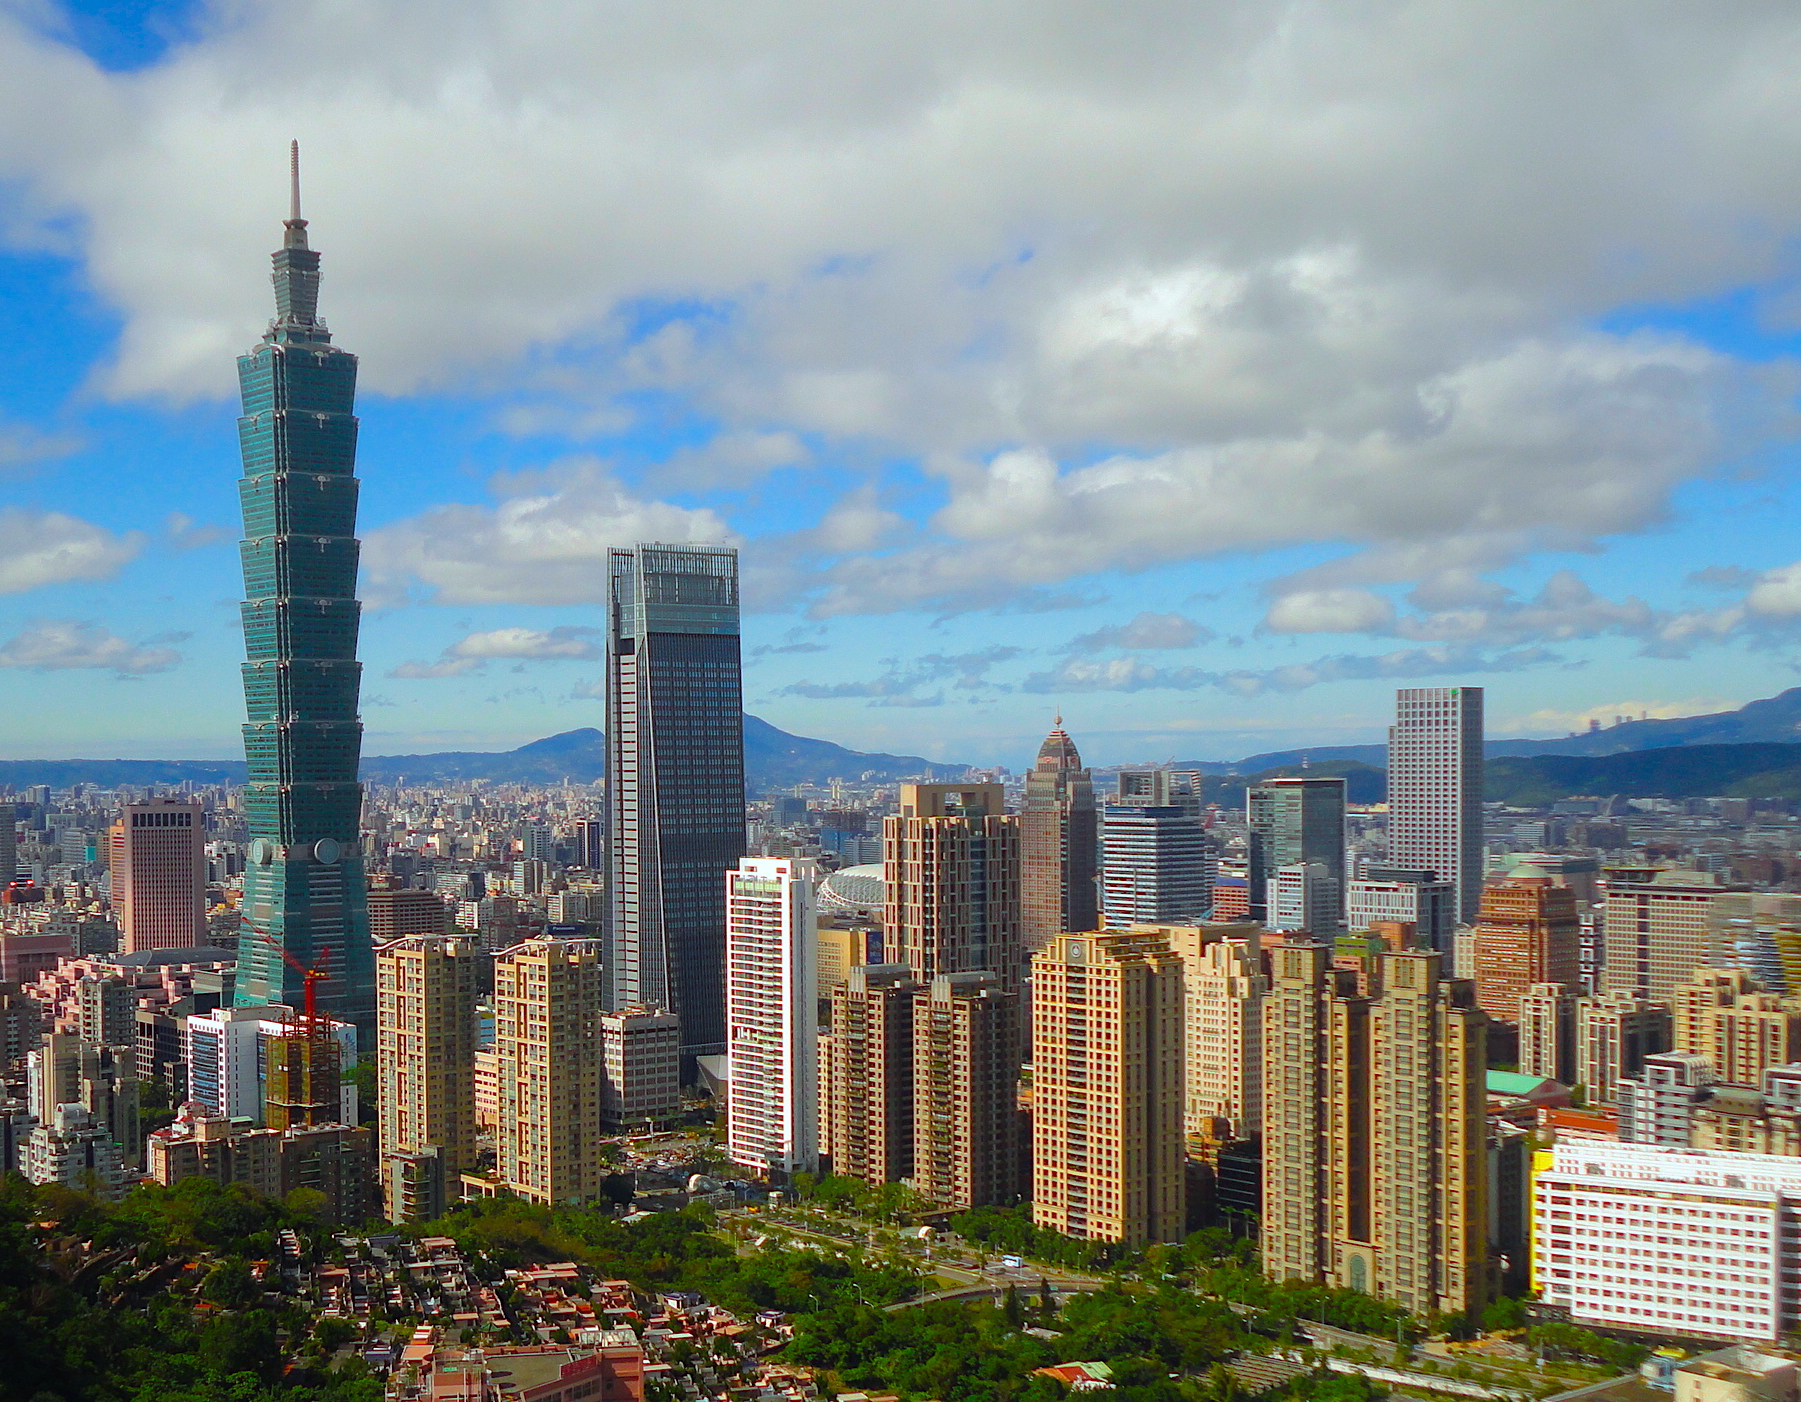 File:Taipei, Taiwan CBD Skyline.jpg - Wikimedia Commons